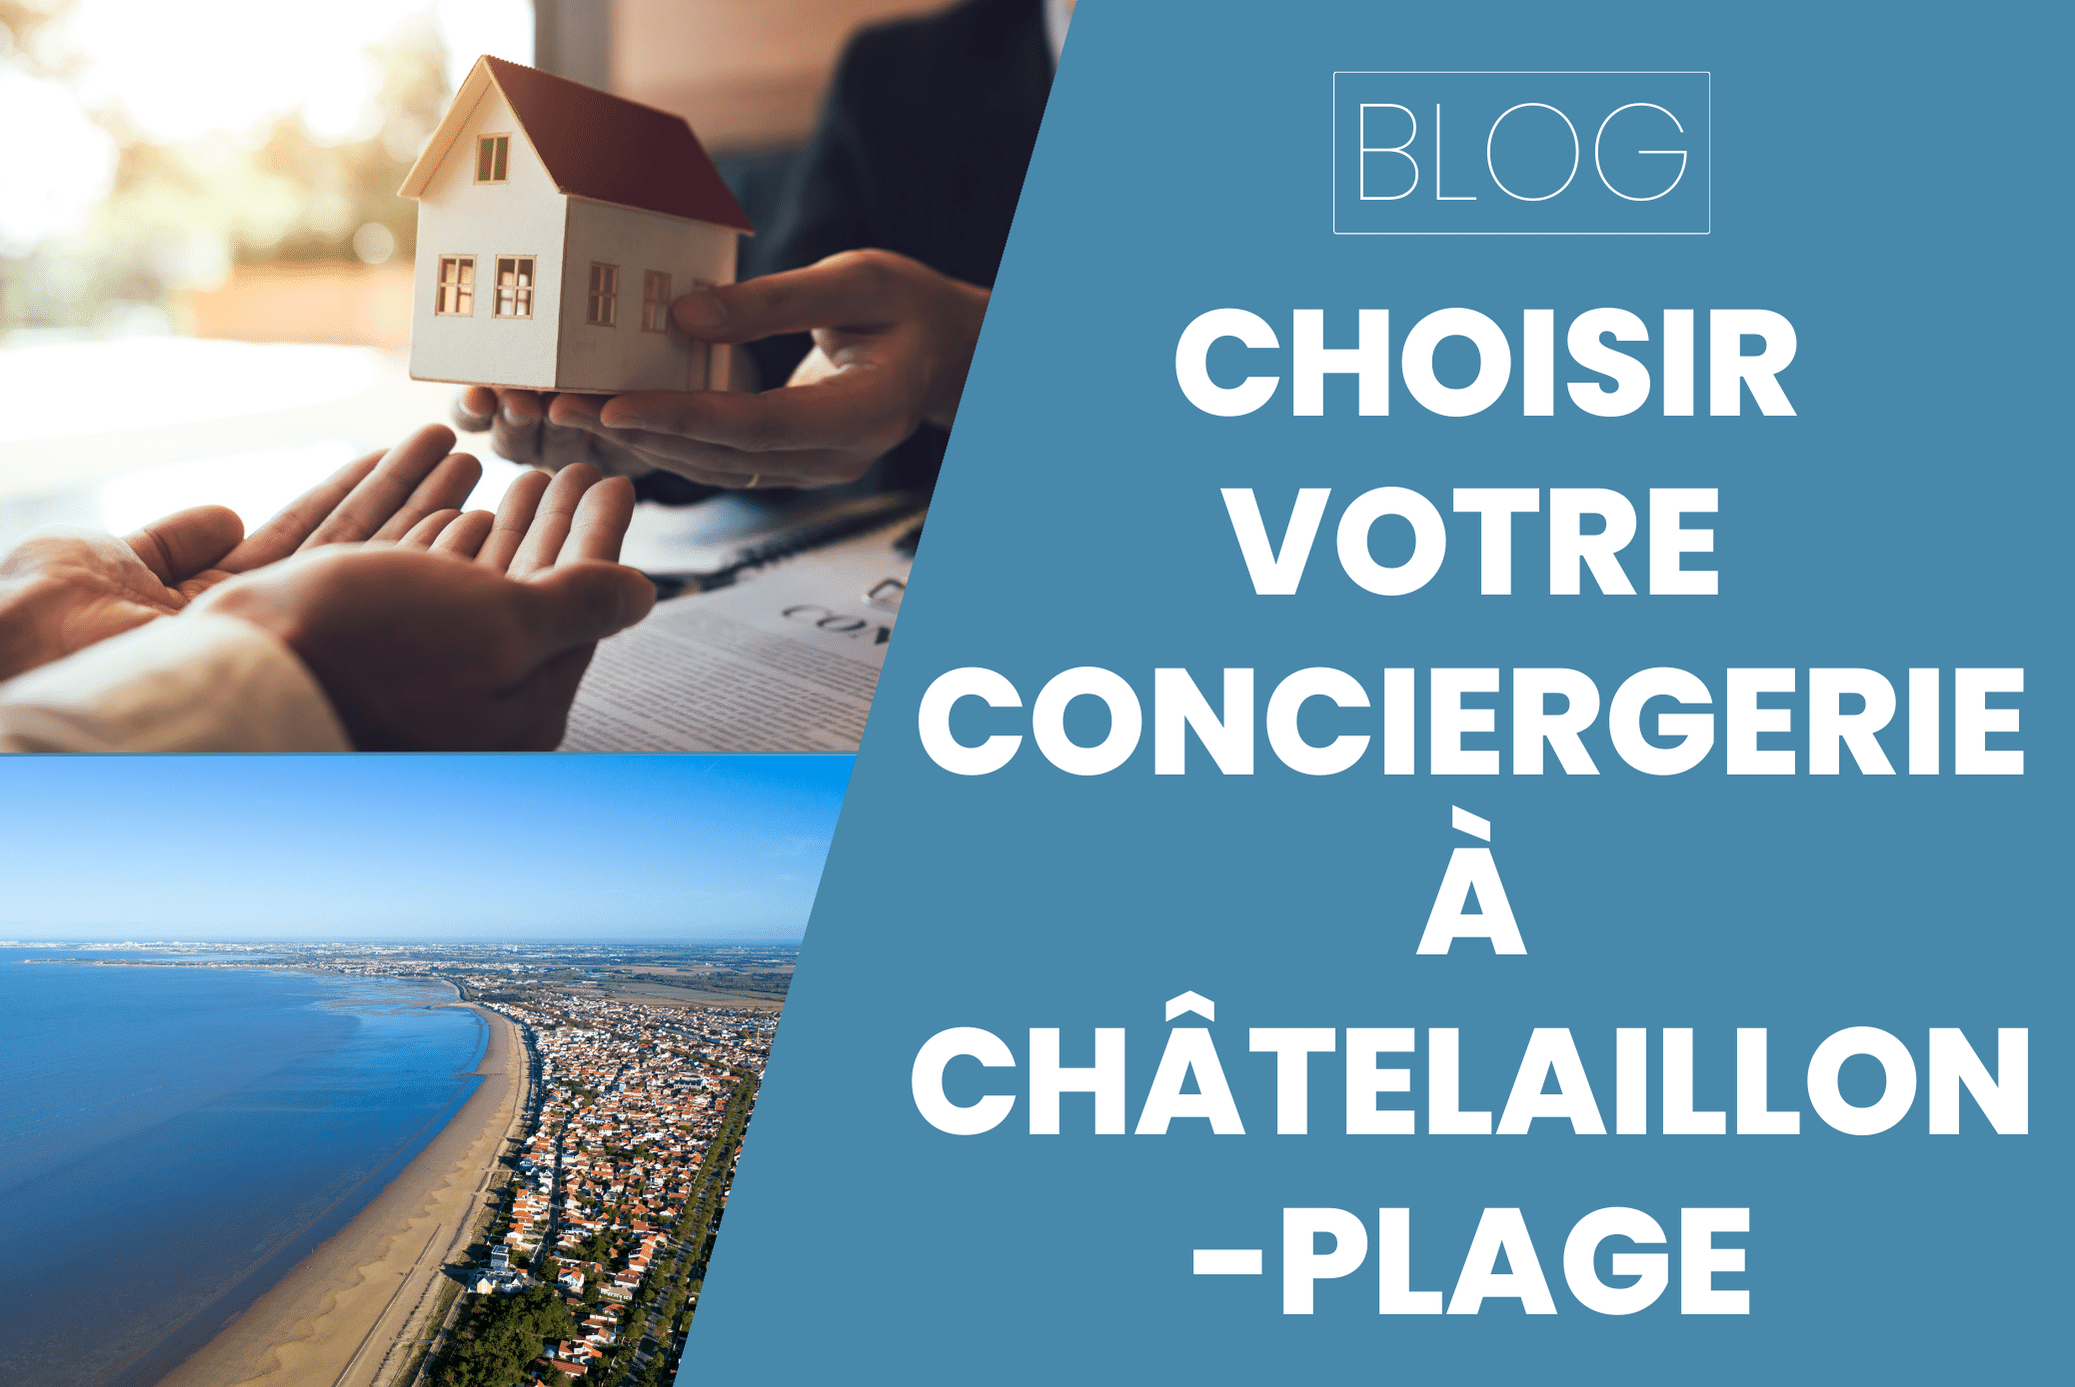 Conciergerie Chatelaillon Plage : Laquelle choisir ?